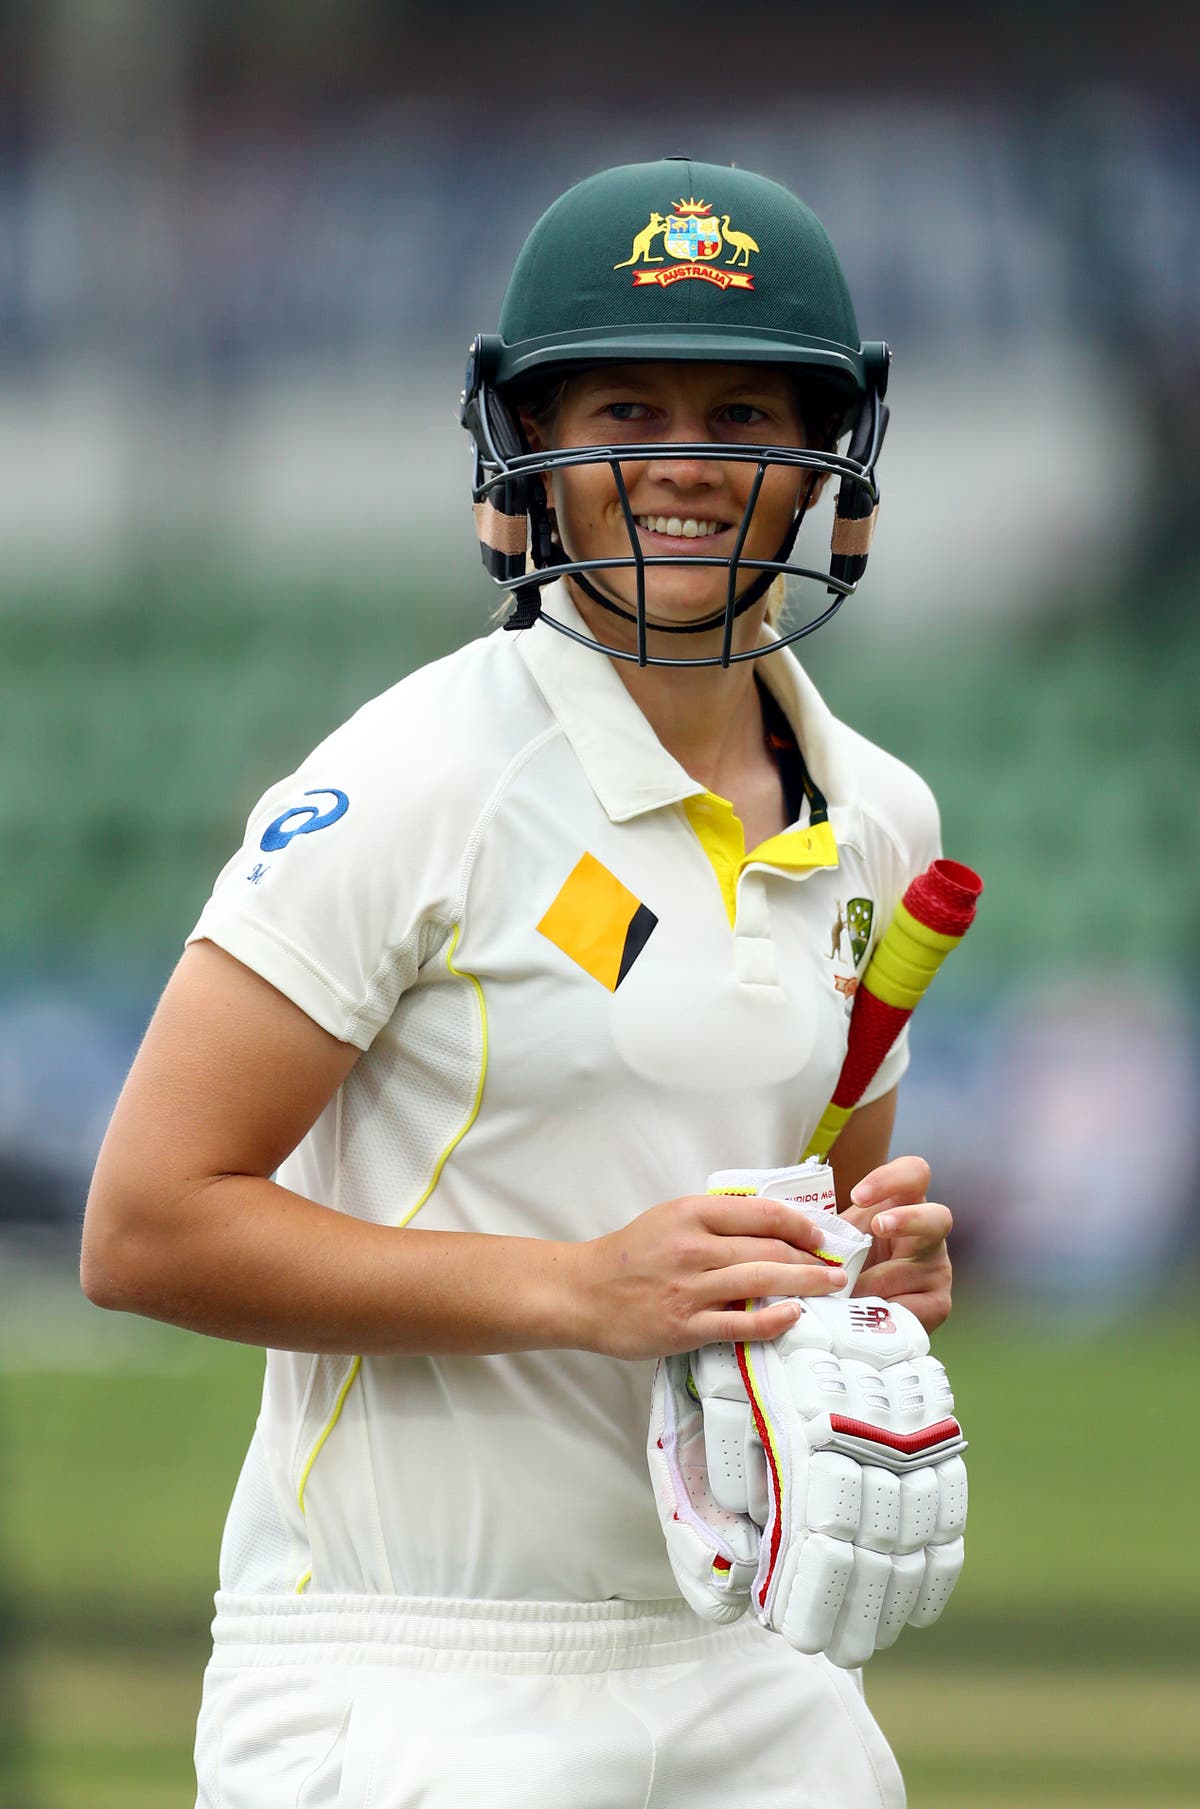 England’s promising start slips as Meg Lanning piles on 93 for Australia